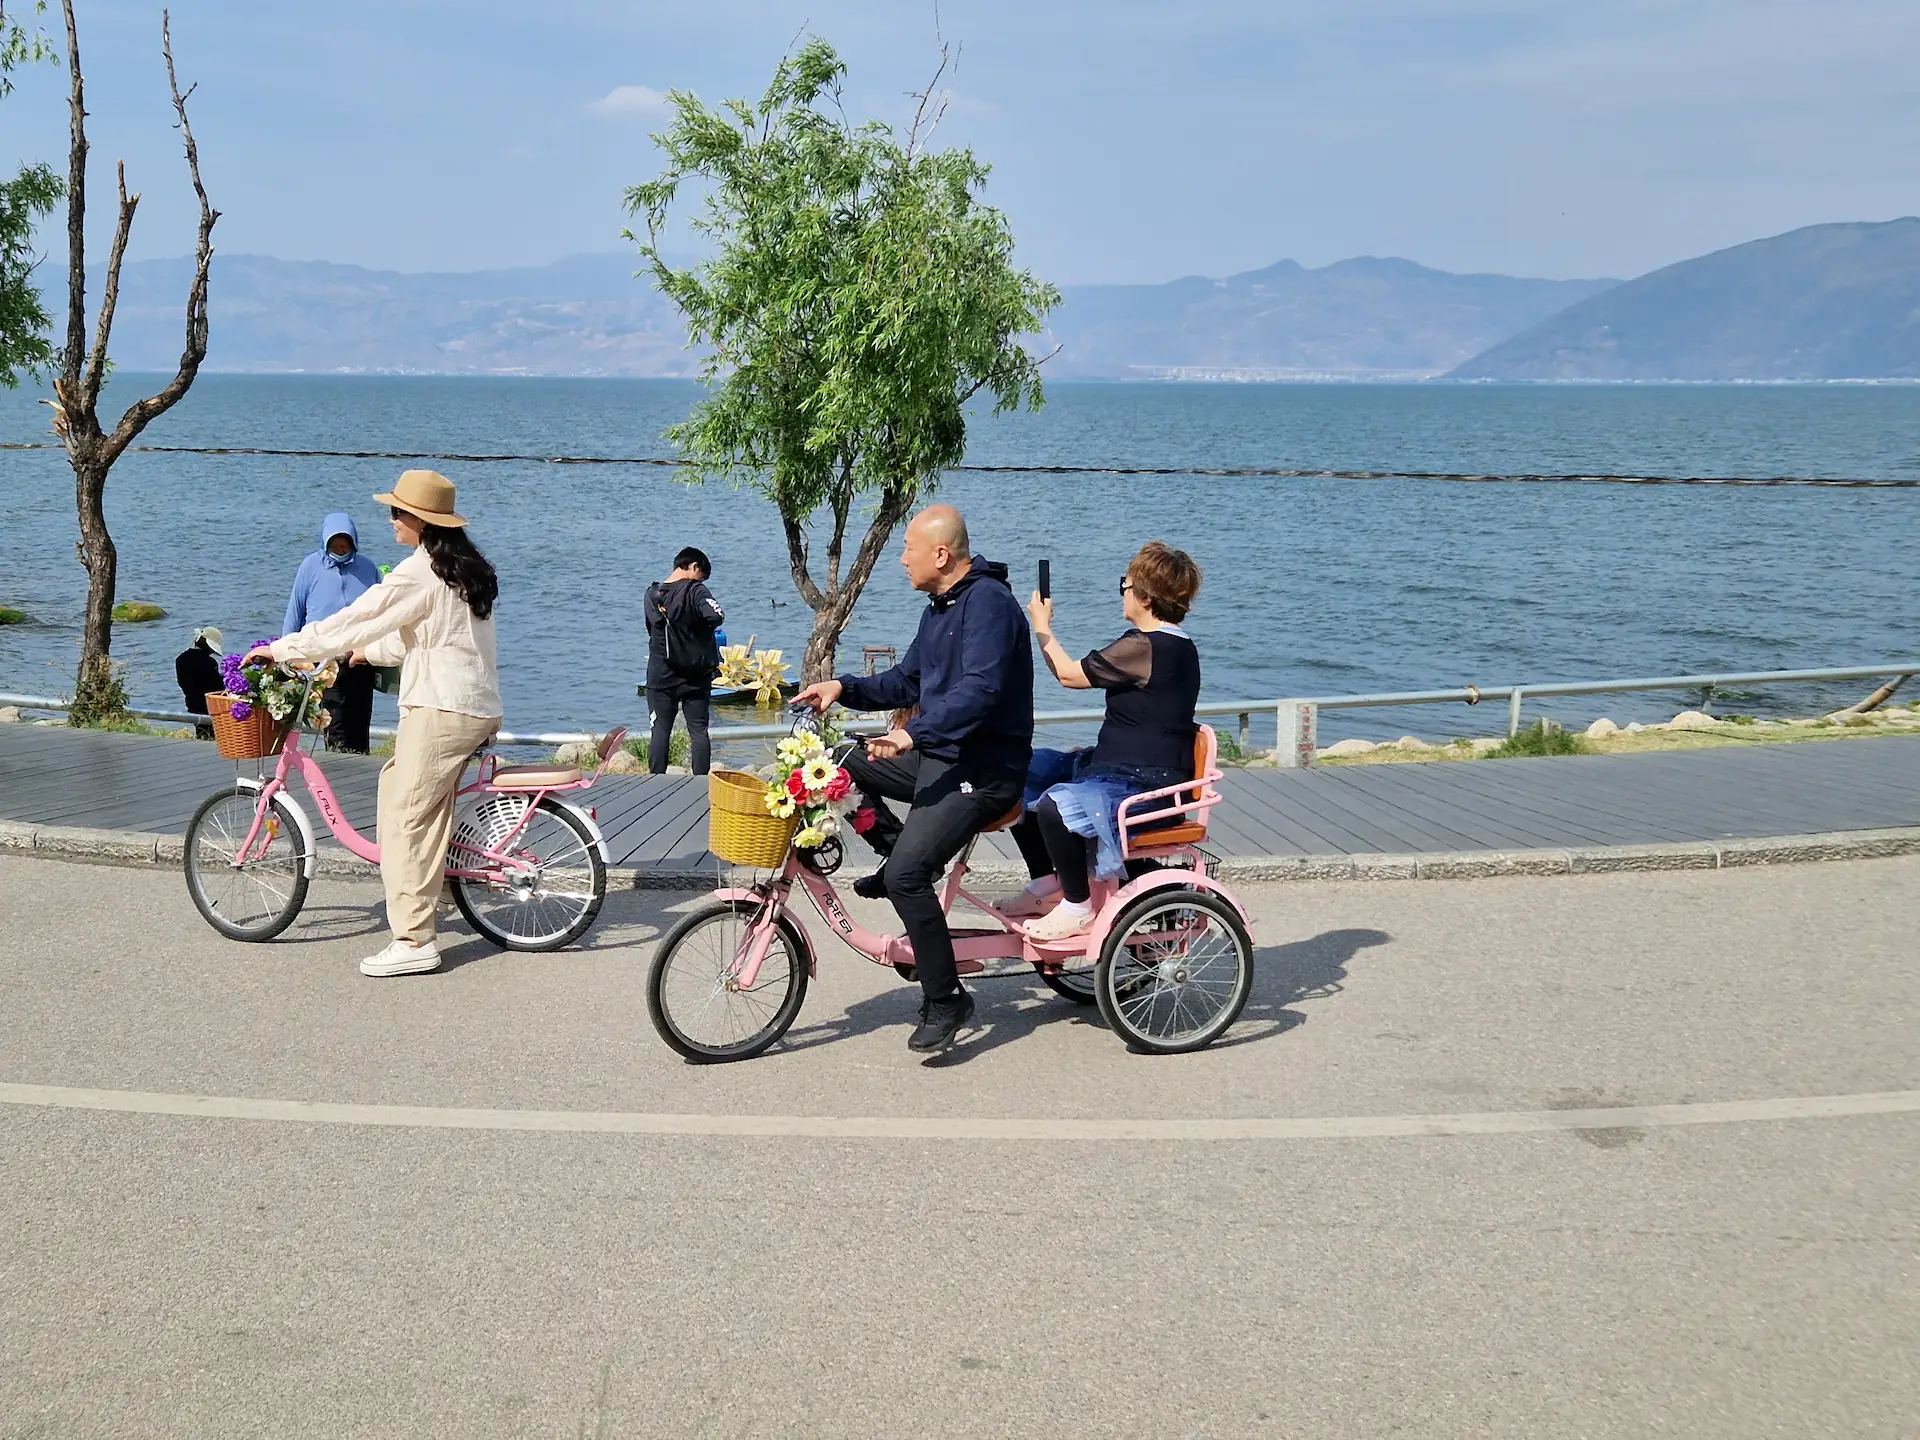 Un monsieur balade sa femme sur un tricycle rose avec panier à fleurs. La femme en profite pour prendre des photos du lac.